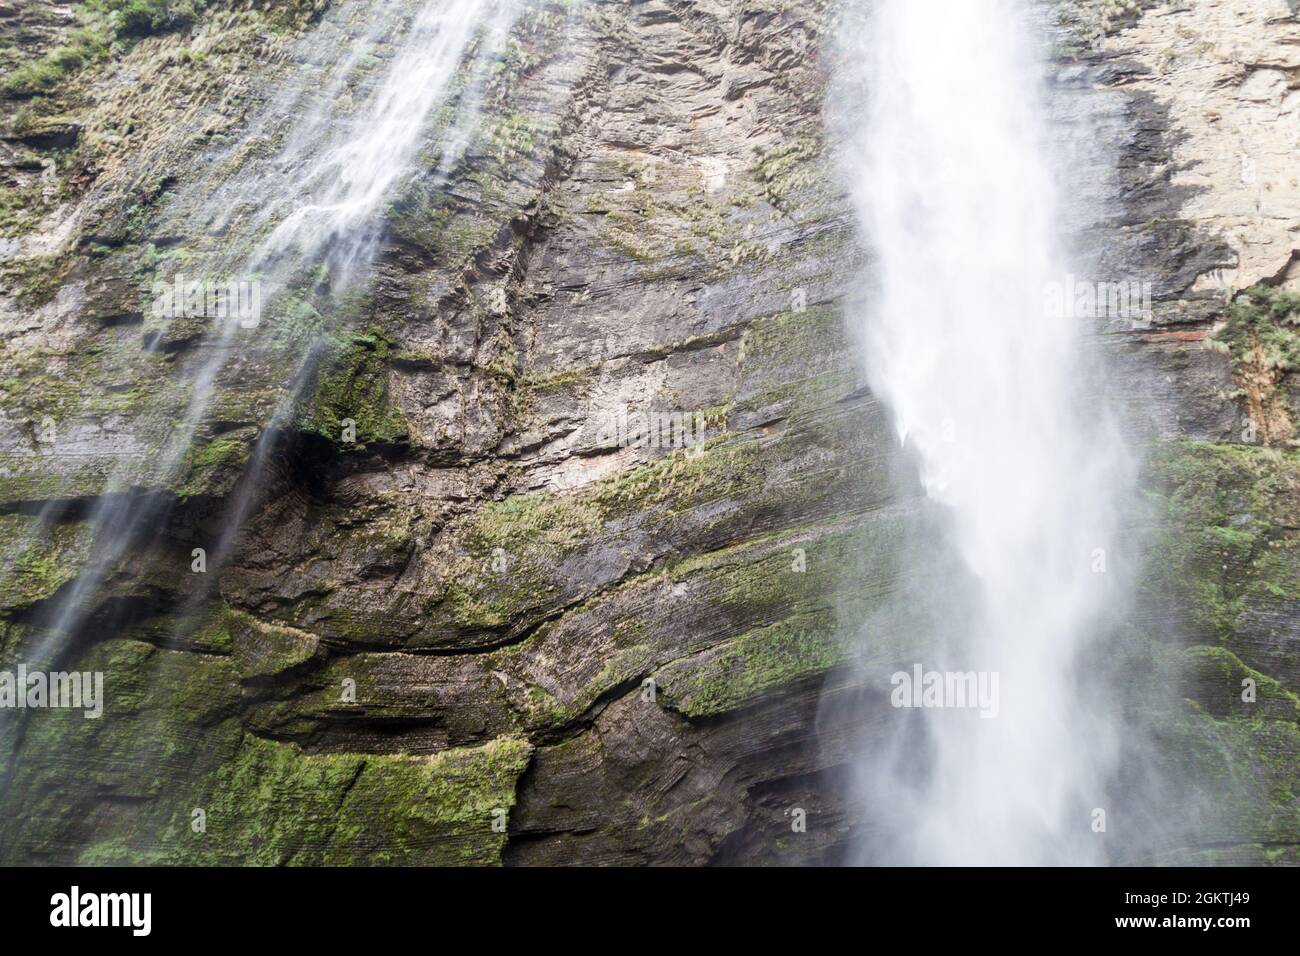 Catarata de Gocta, einer der höchsten Wasserfälle der Welt (771 m in zwei Kaskaden), im Norden Perus. Stockfoto